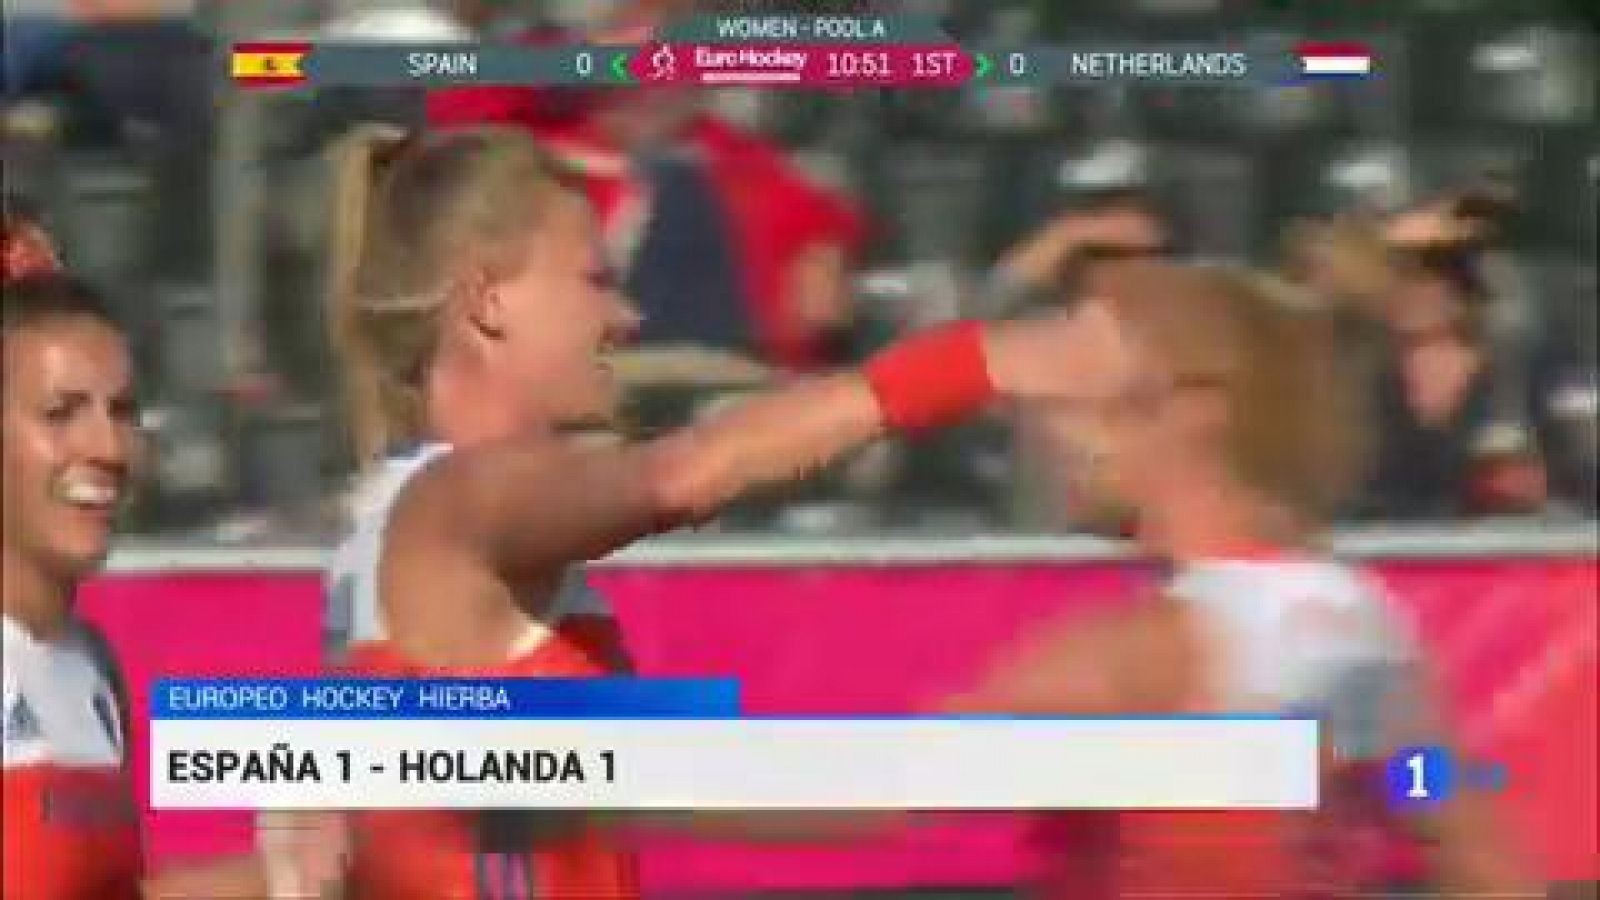 La selección española de hockey hierba ha logrado un valioso empate (1-1) frente a Holanda, vigente campeona del mundo, en la segunda jornada del Europeo de hockey absoluto que se está disputando en la localidad belga de Amberes.